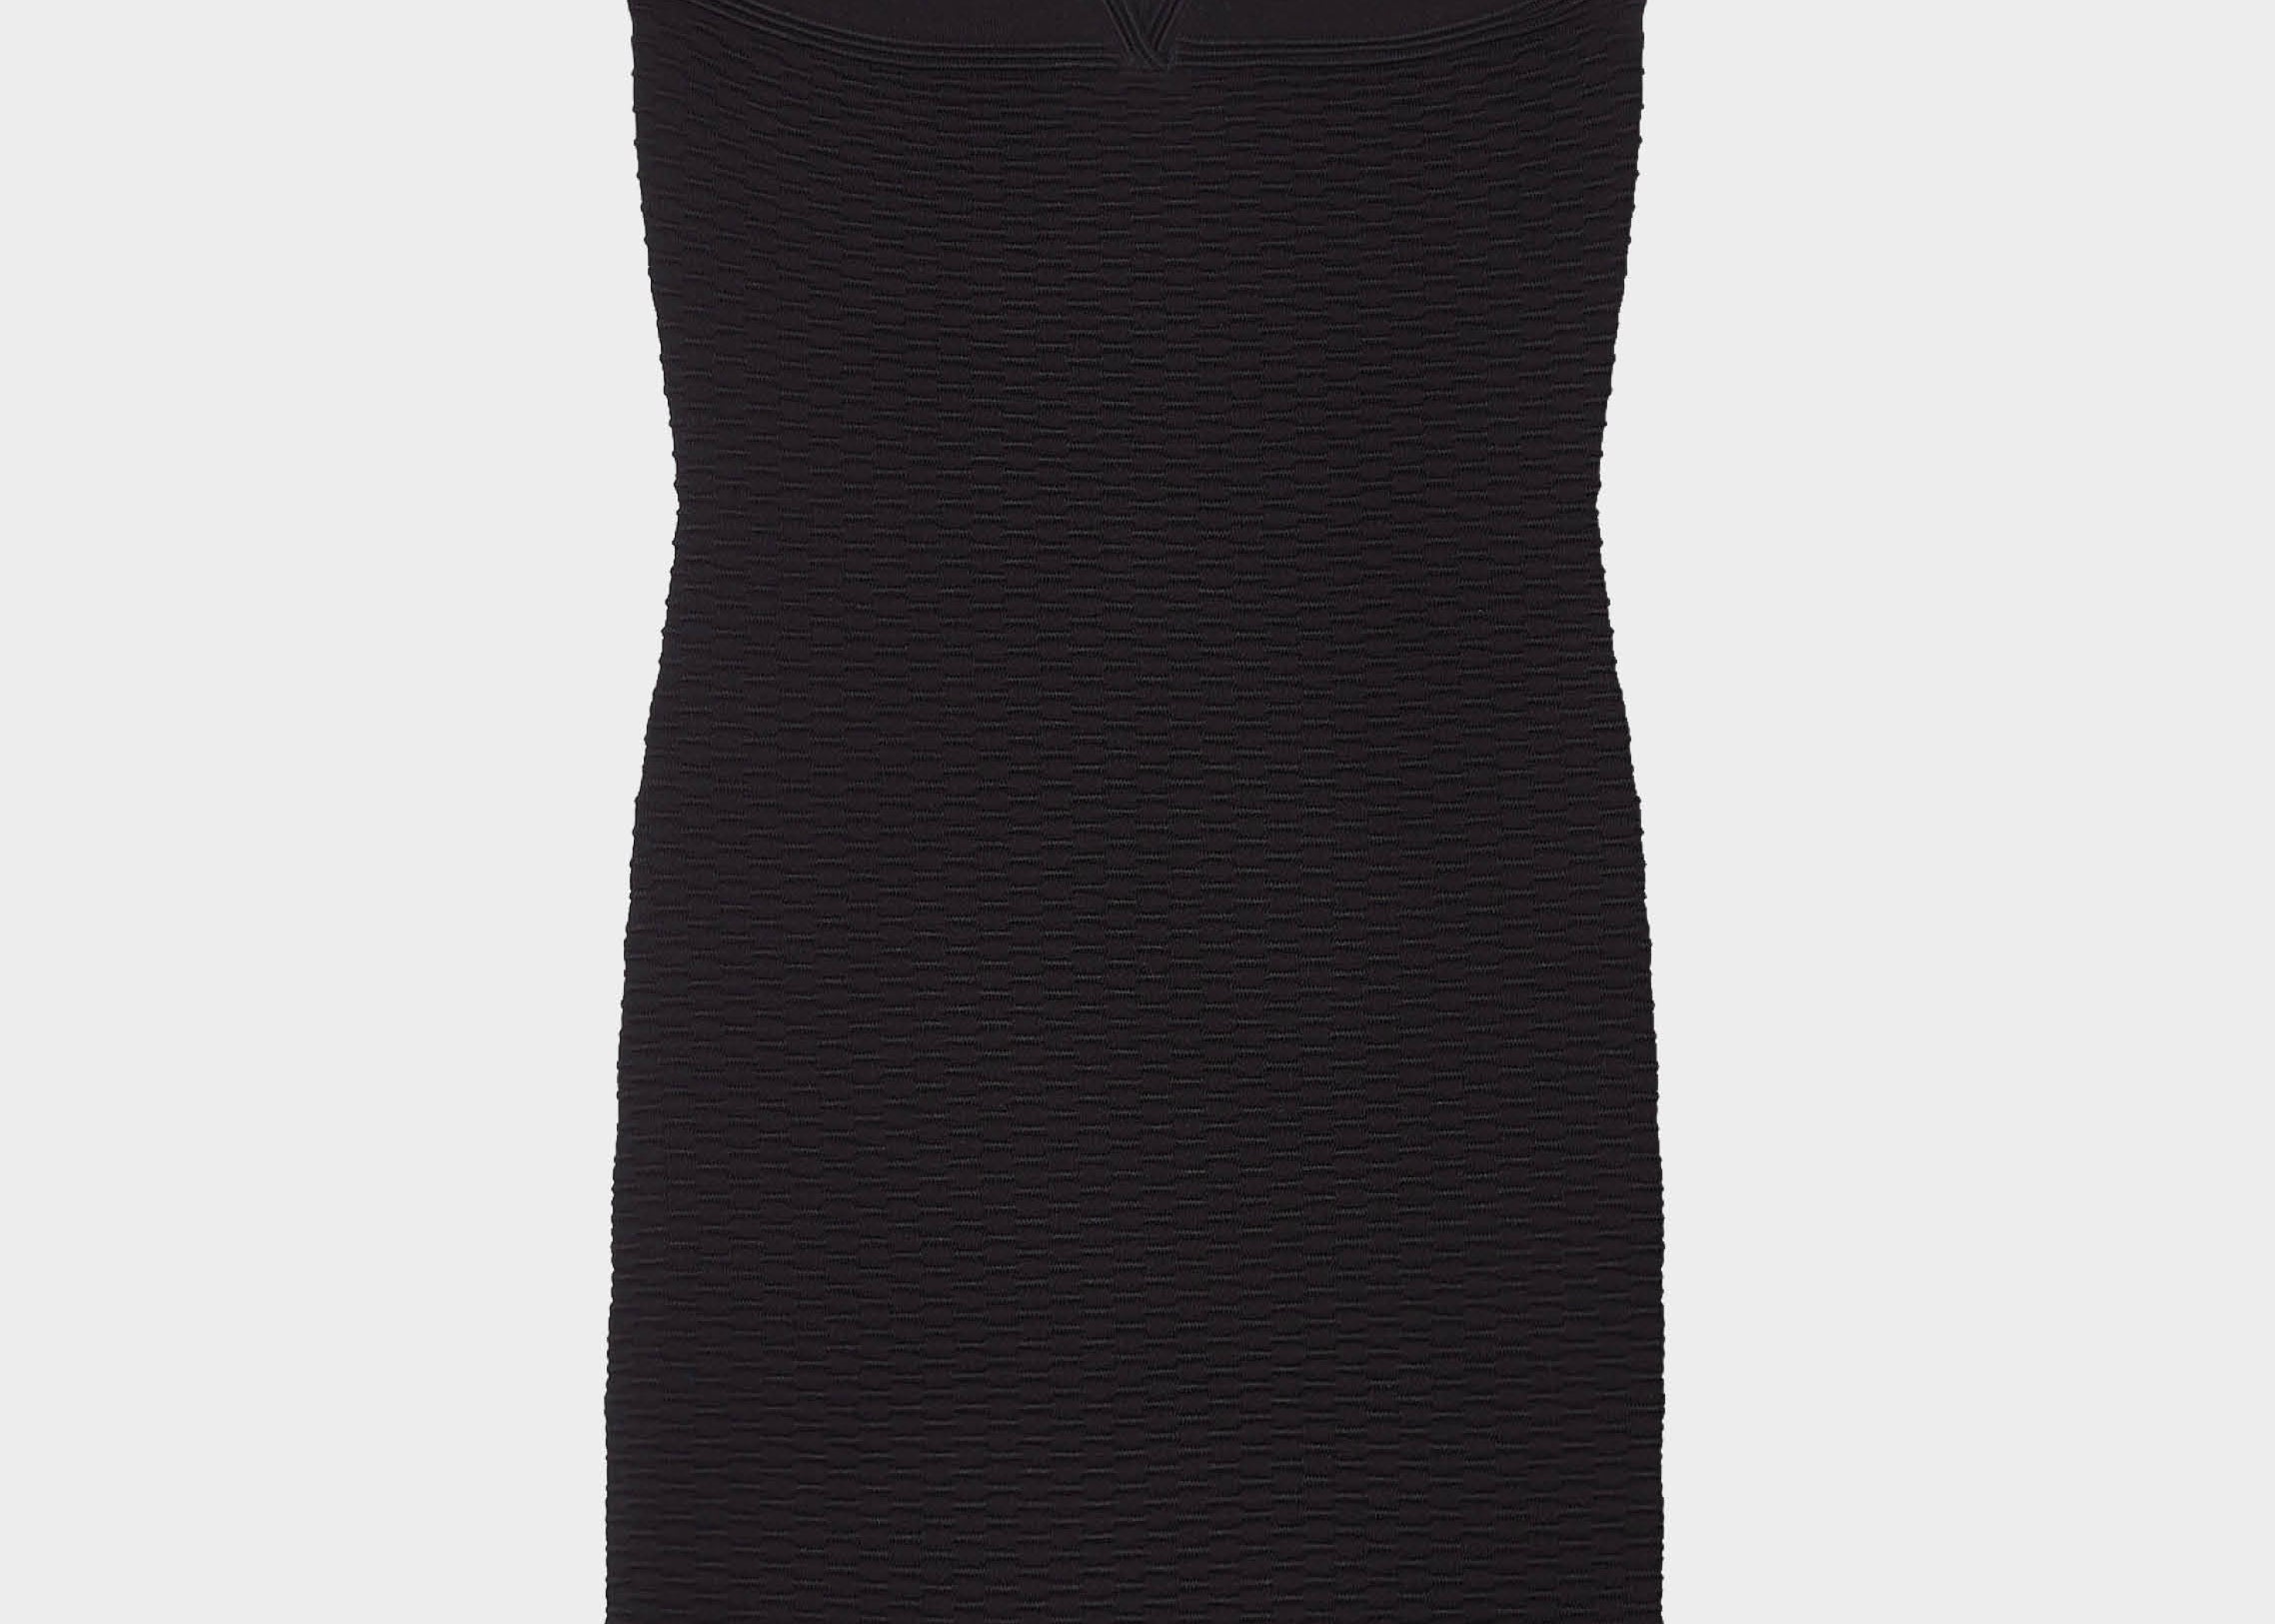 Vestido mini negro escote en forma de corazón de Iro Paris. Envíos gratuitos a partir de 200€. Devoluciones fáciles. 